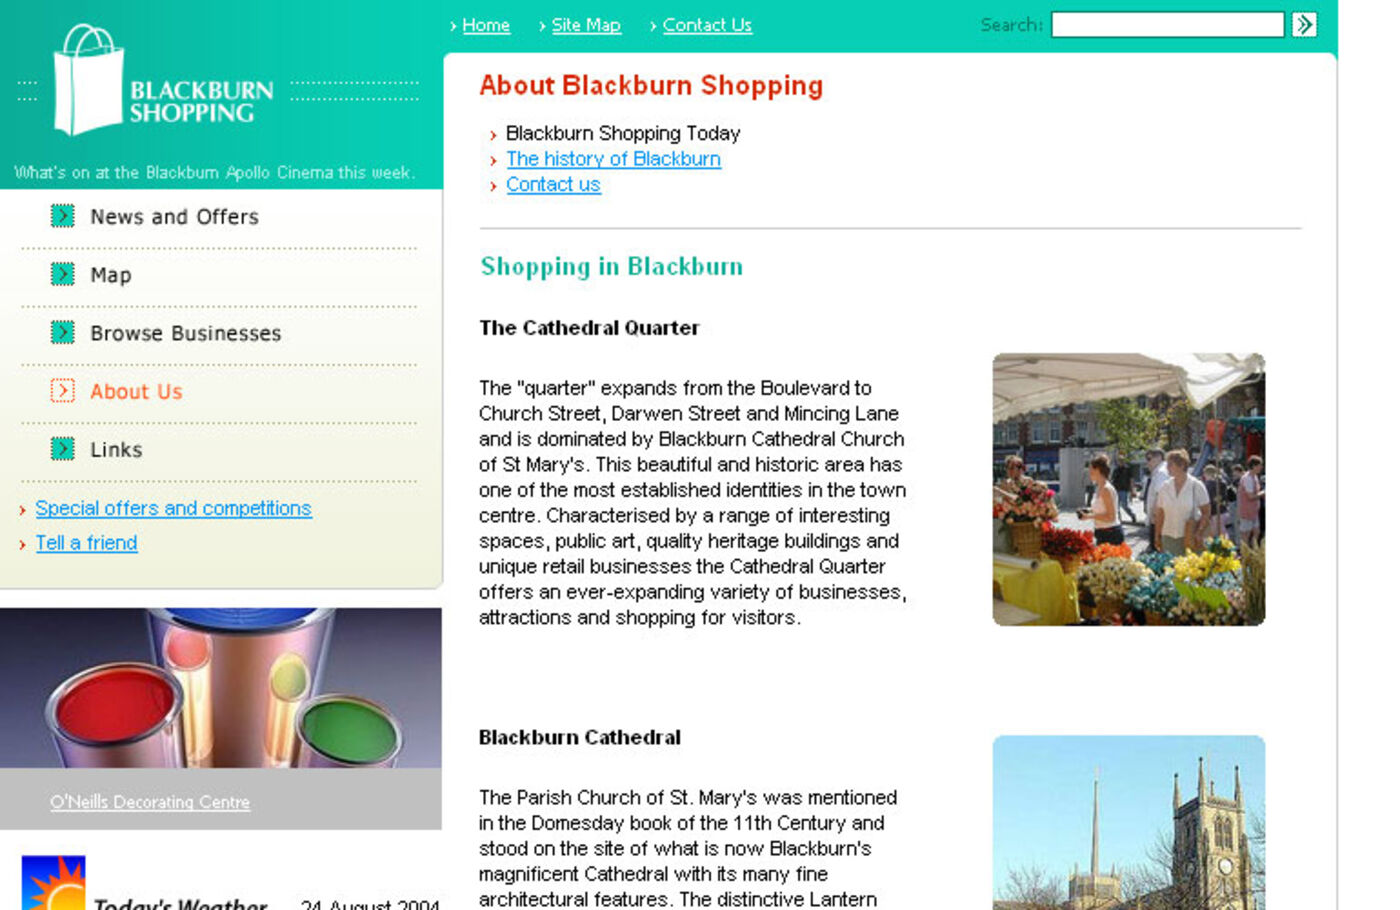 Blackburn Shopping Regular page